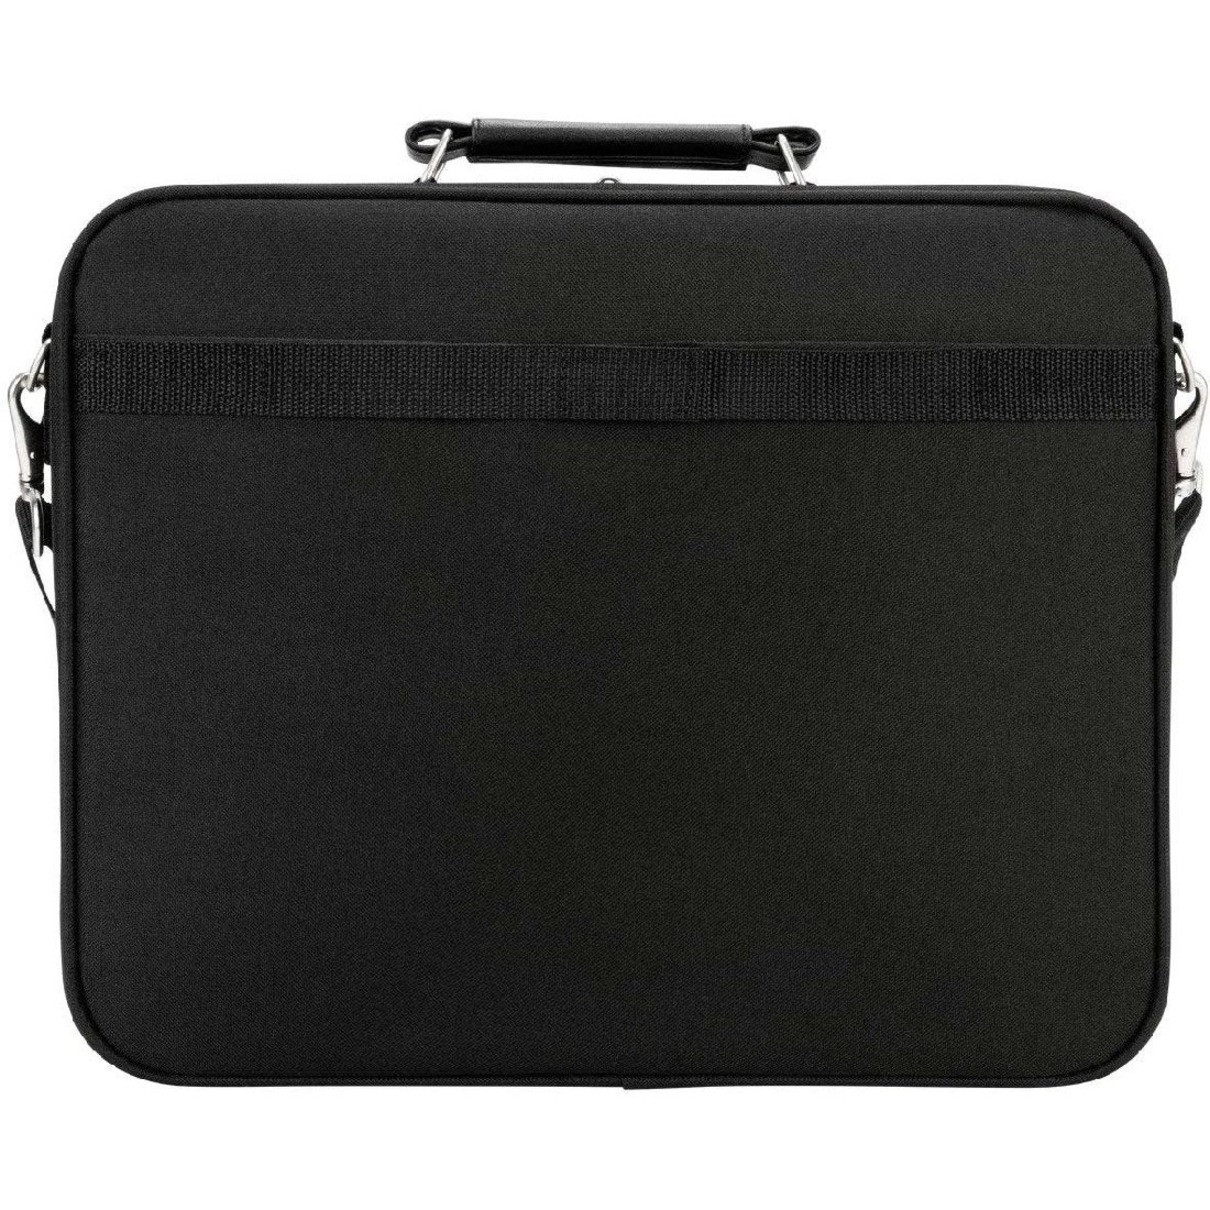 Targus Notebook CaseScratch ResistantNylon BodyShoulder Strap, Luggage Strap14.8″ Height x 15.5″ Width x 4.4″ Depth3.96 gal Volume C… OCN1